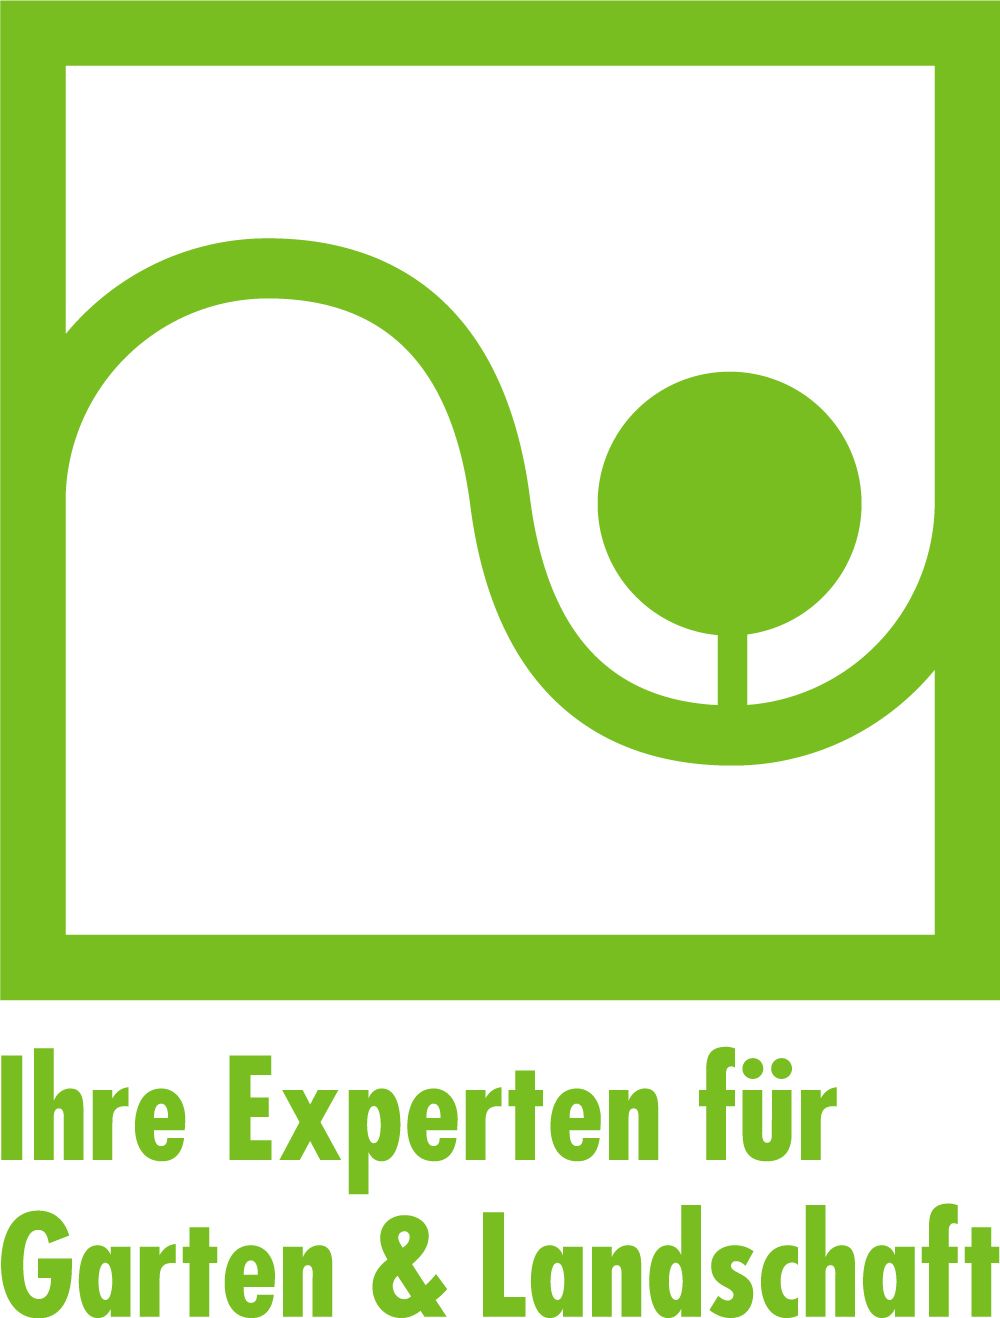 Logo Bundesverband Garten-, Landschafts- und Sportplatzbau e. V.